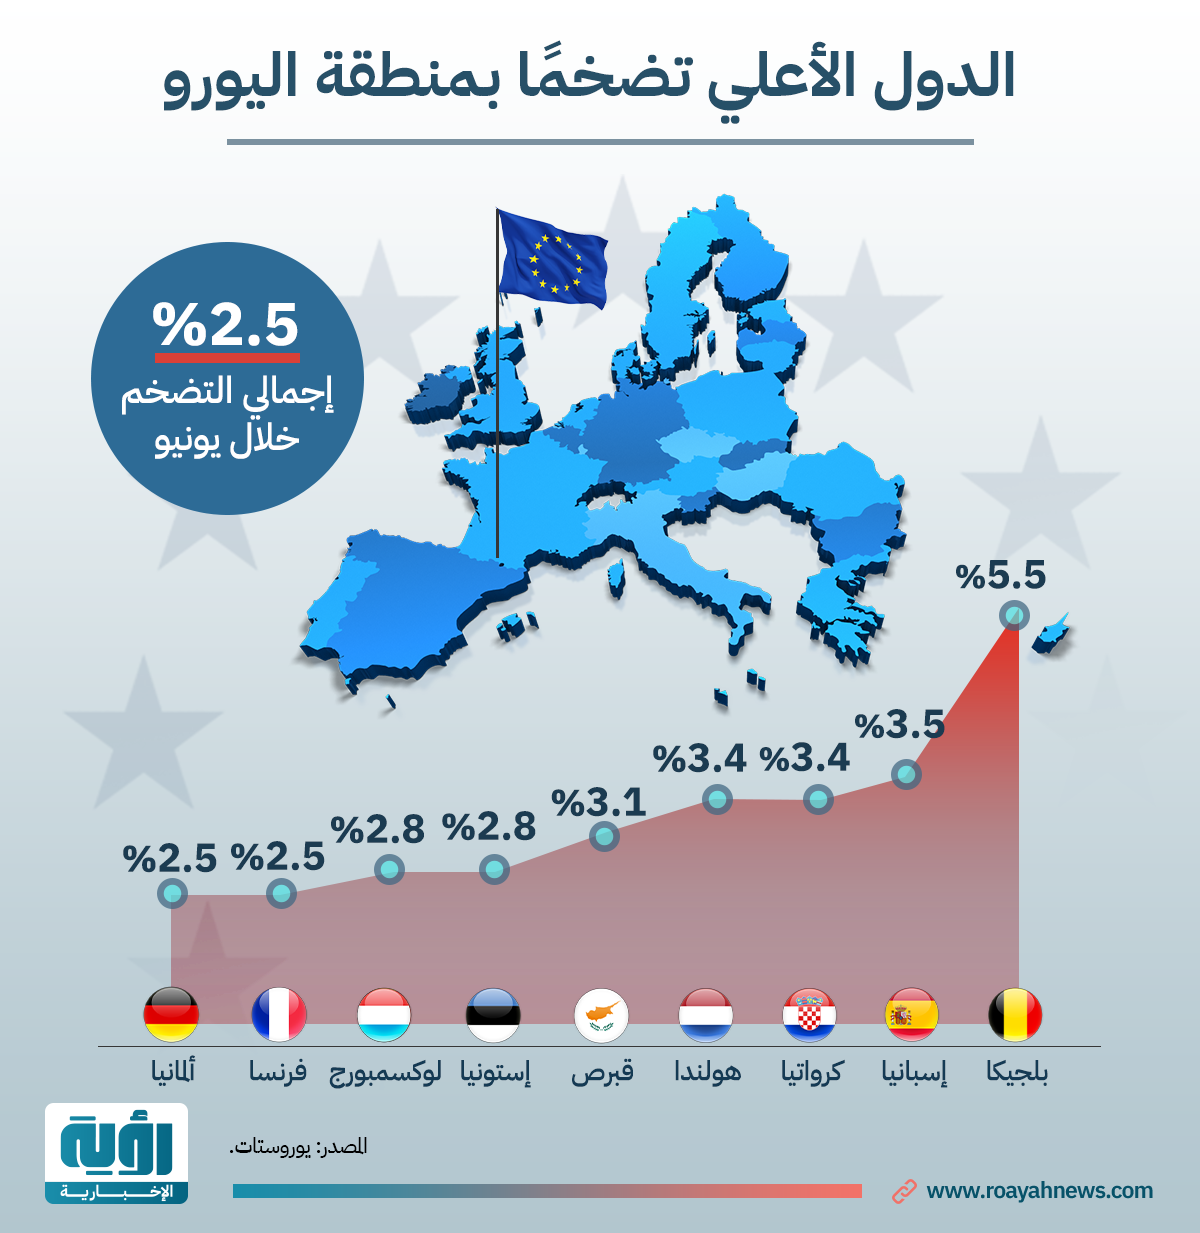 الدول الأعلي تضخمًا بمنطقة اليورو